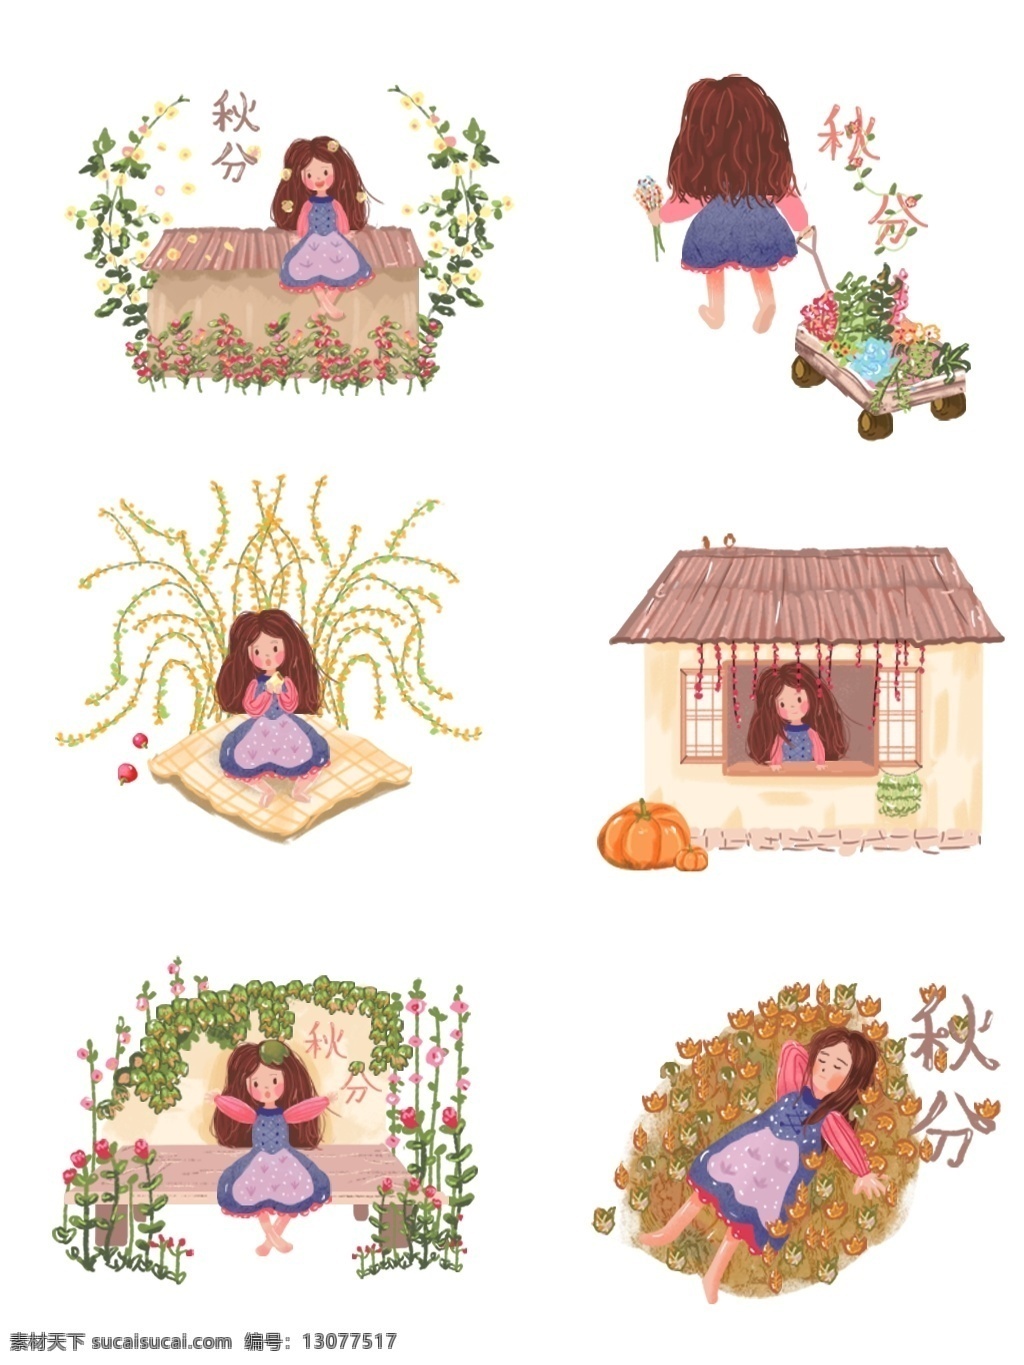 二十四节气 之秋 分 小女孩 植物 花 手绘 插画 元素 绿色 黄色 房子 可爱 秋分 落叶 水 南瓜 卡通